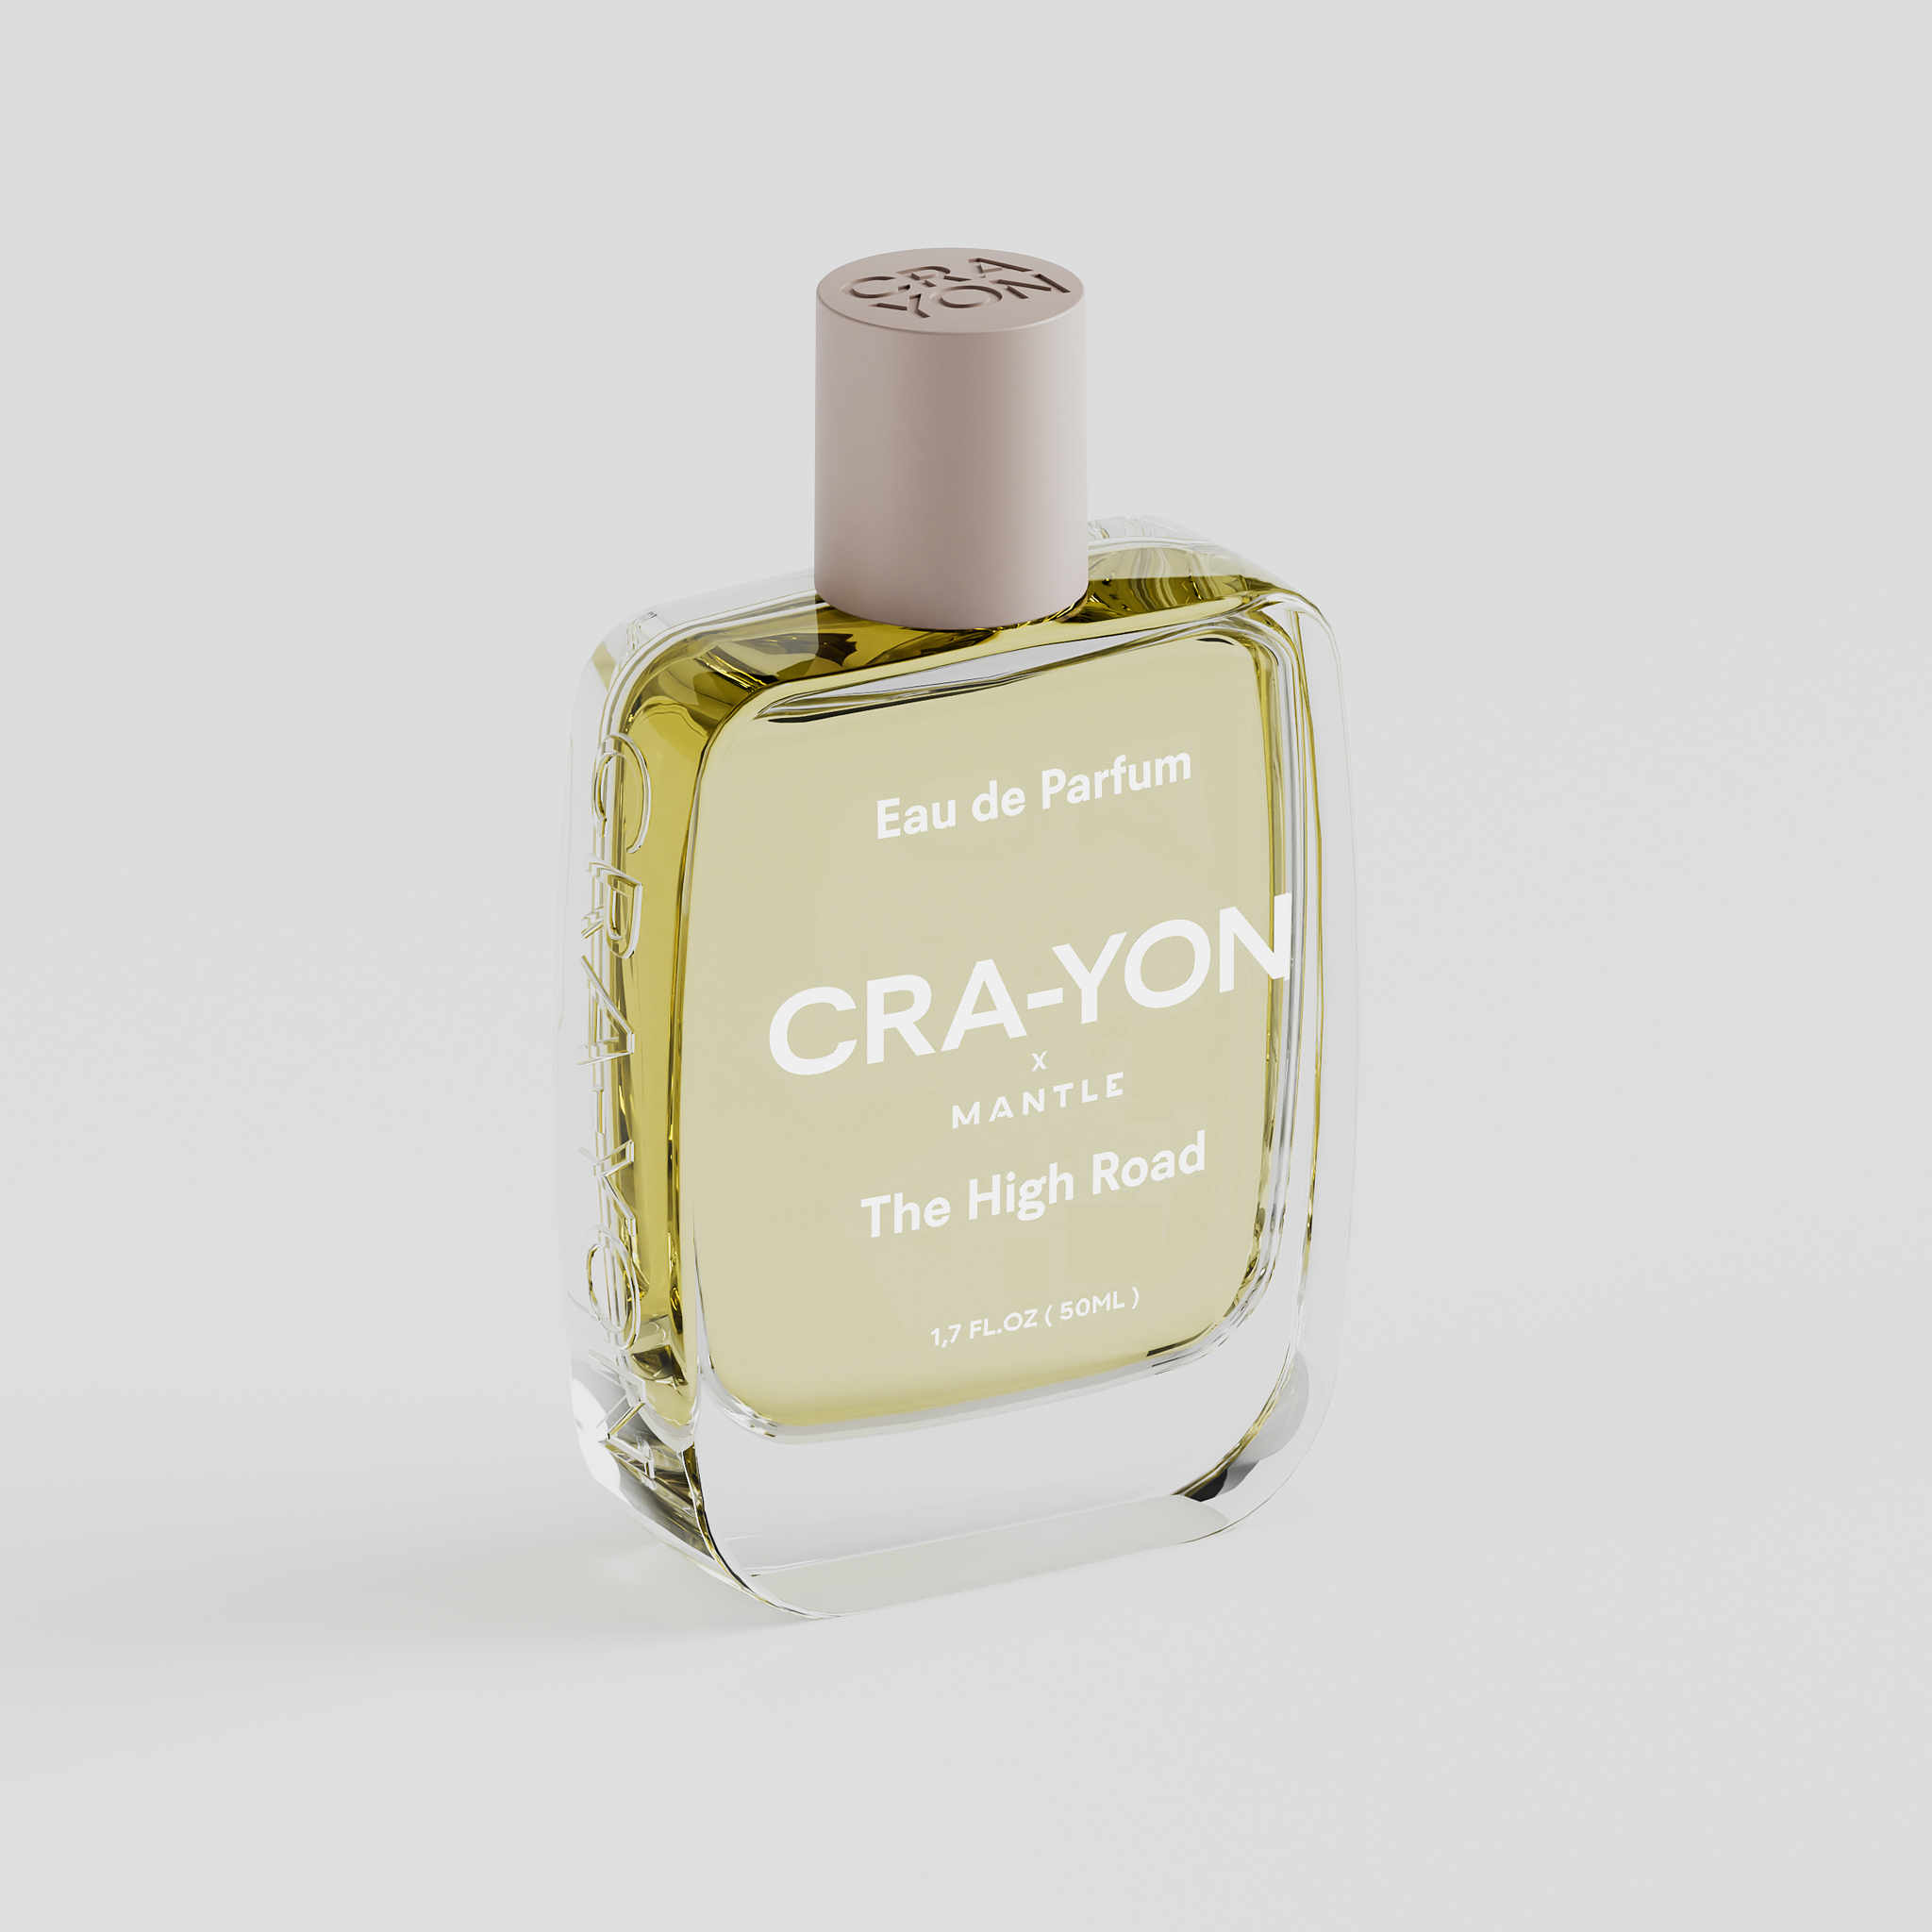 CRA-YON The High Road Eau de Parfum - Stèle